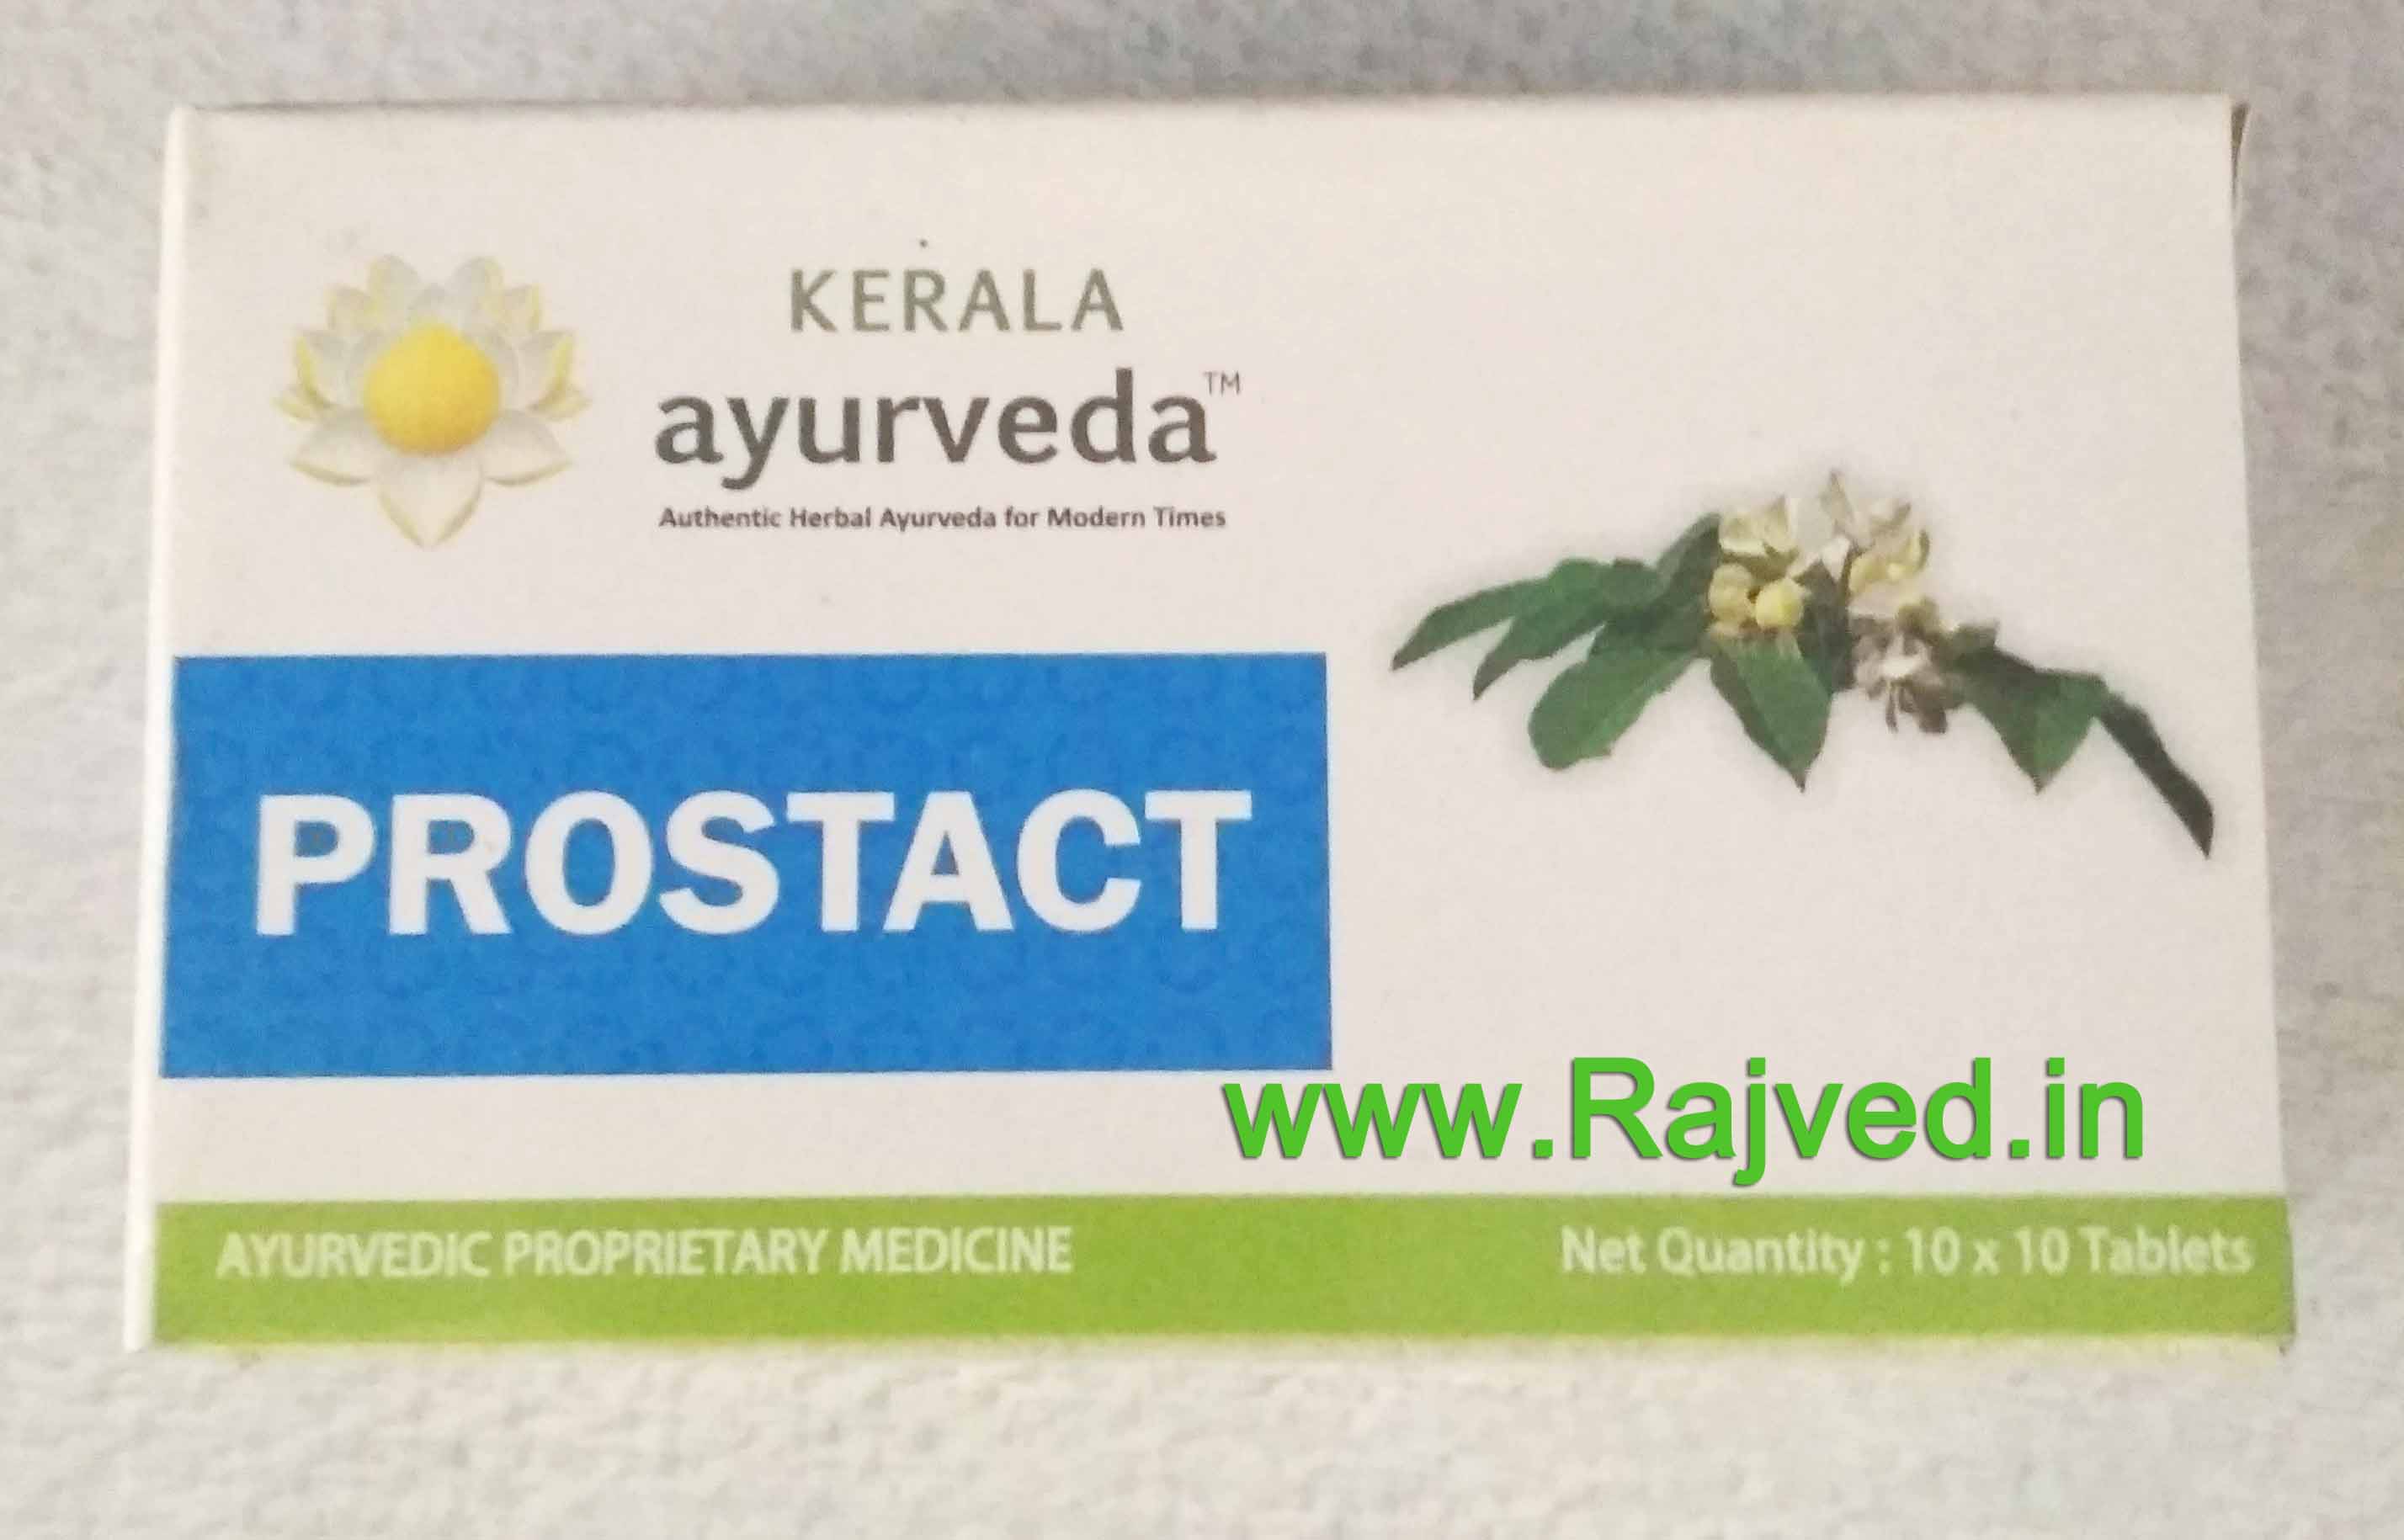 prostact tablet 100 tab upto 15% off kerala ayuvrda Ltd